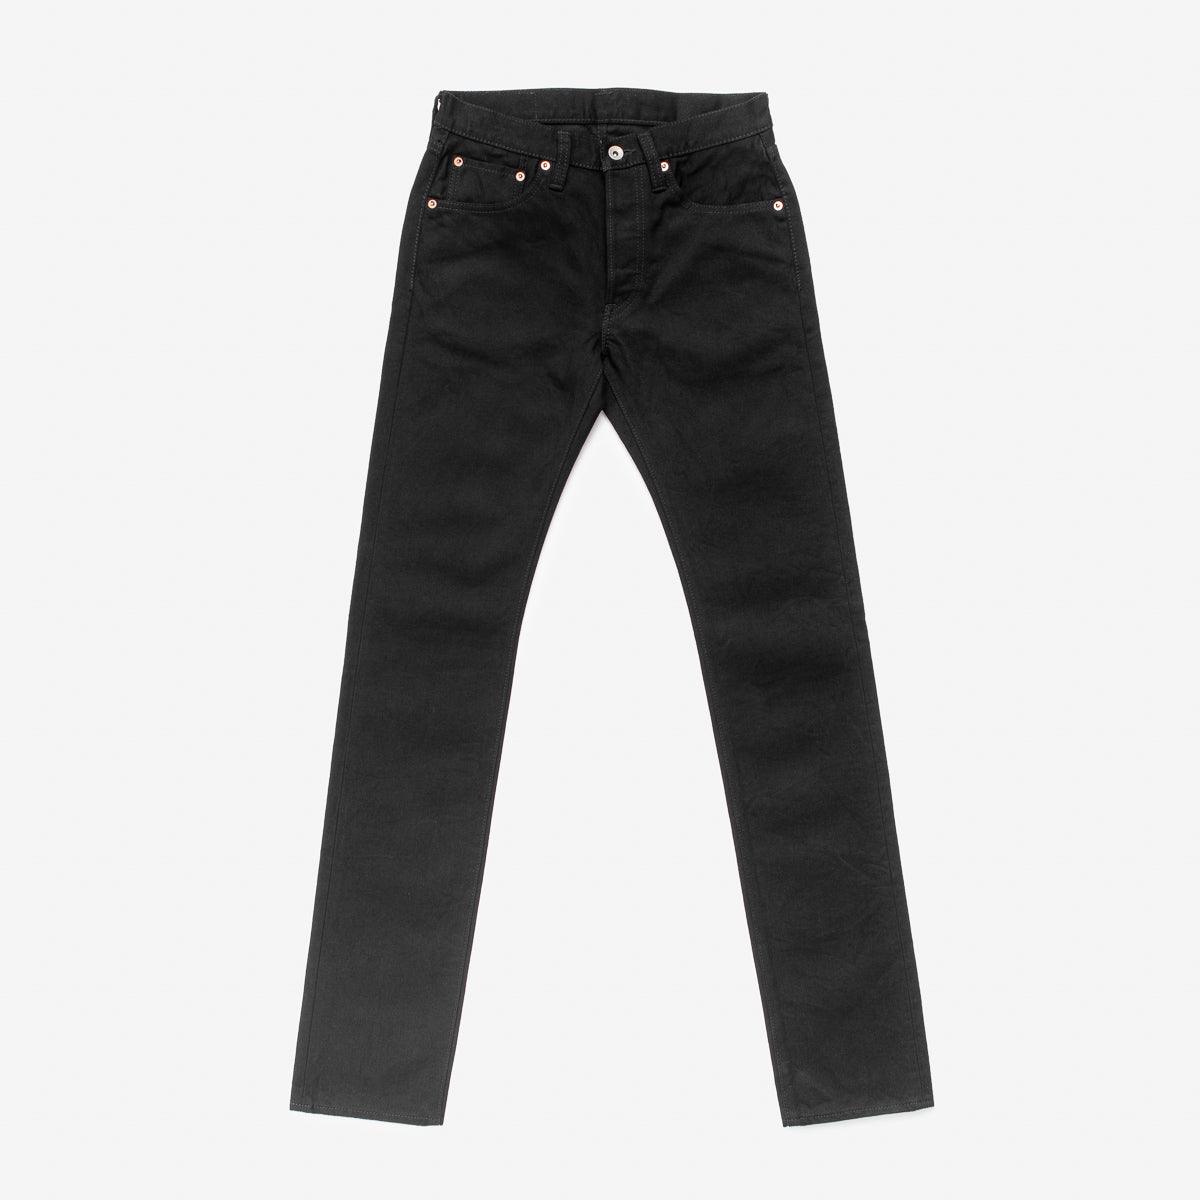 IH-777S-142bb - 14oz Selvedge Denim Slim Tapered Jeans - Black/Black